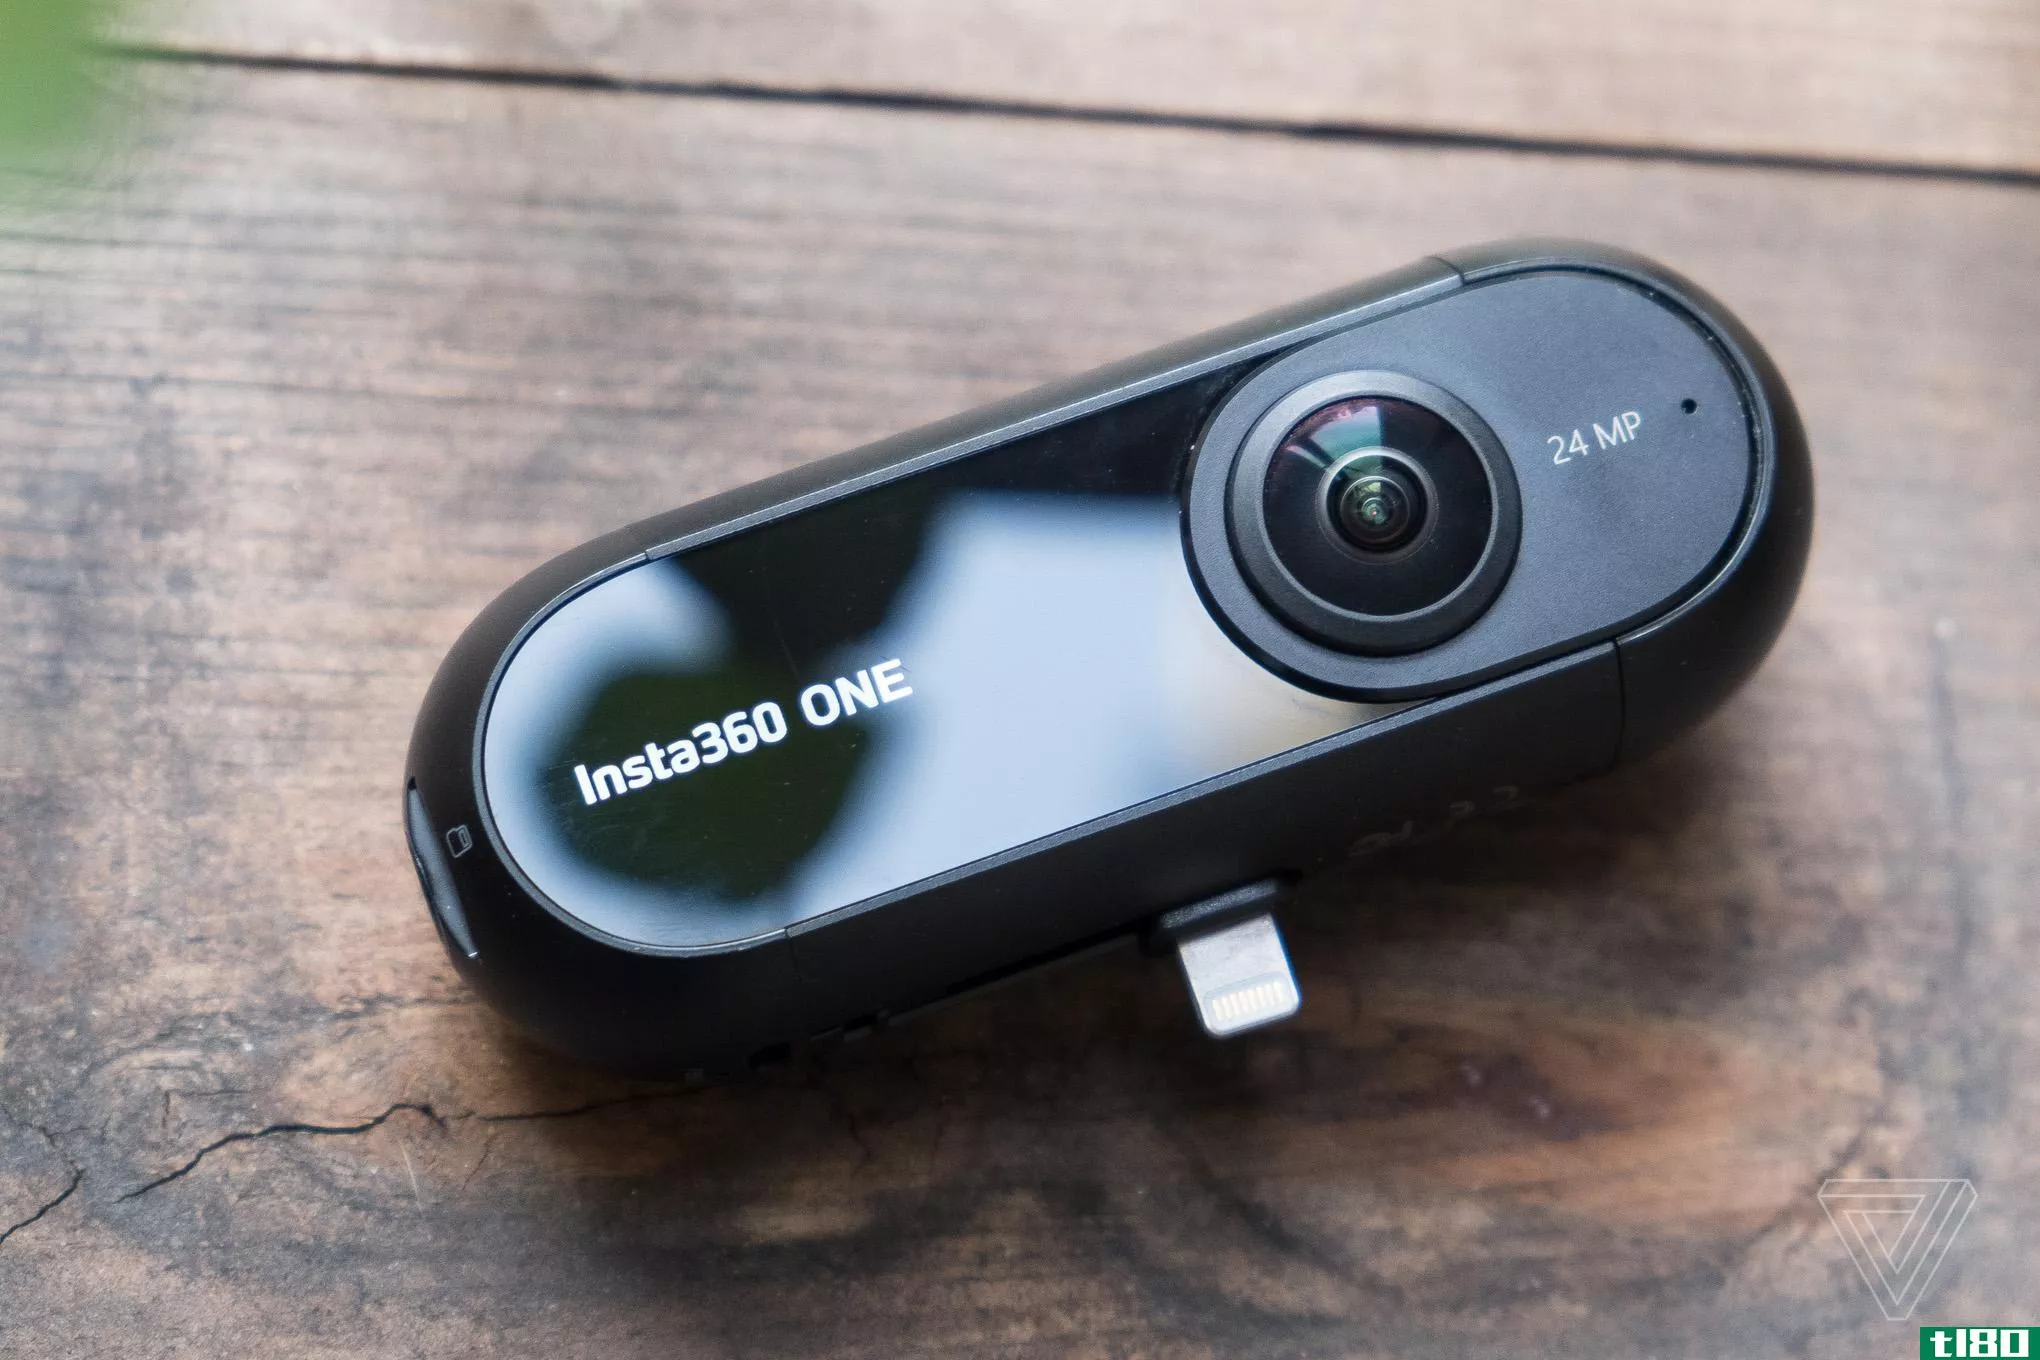 insta360 one是一款360度相机，它的袖子里有一个非常聪明的小把戏